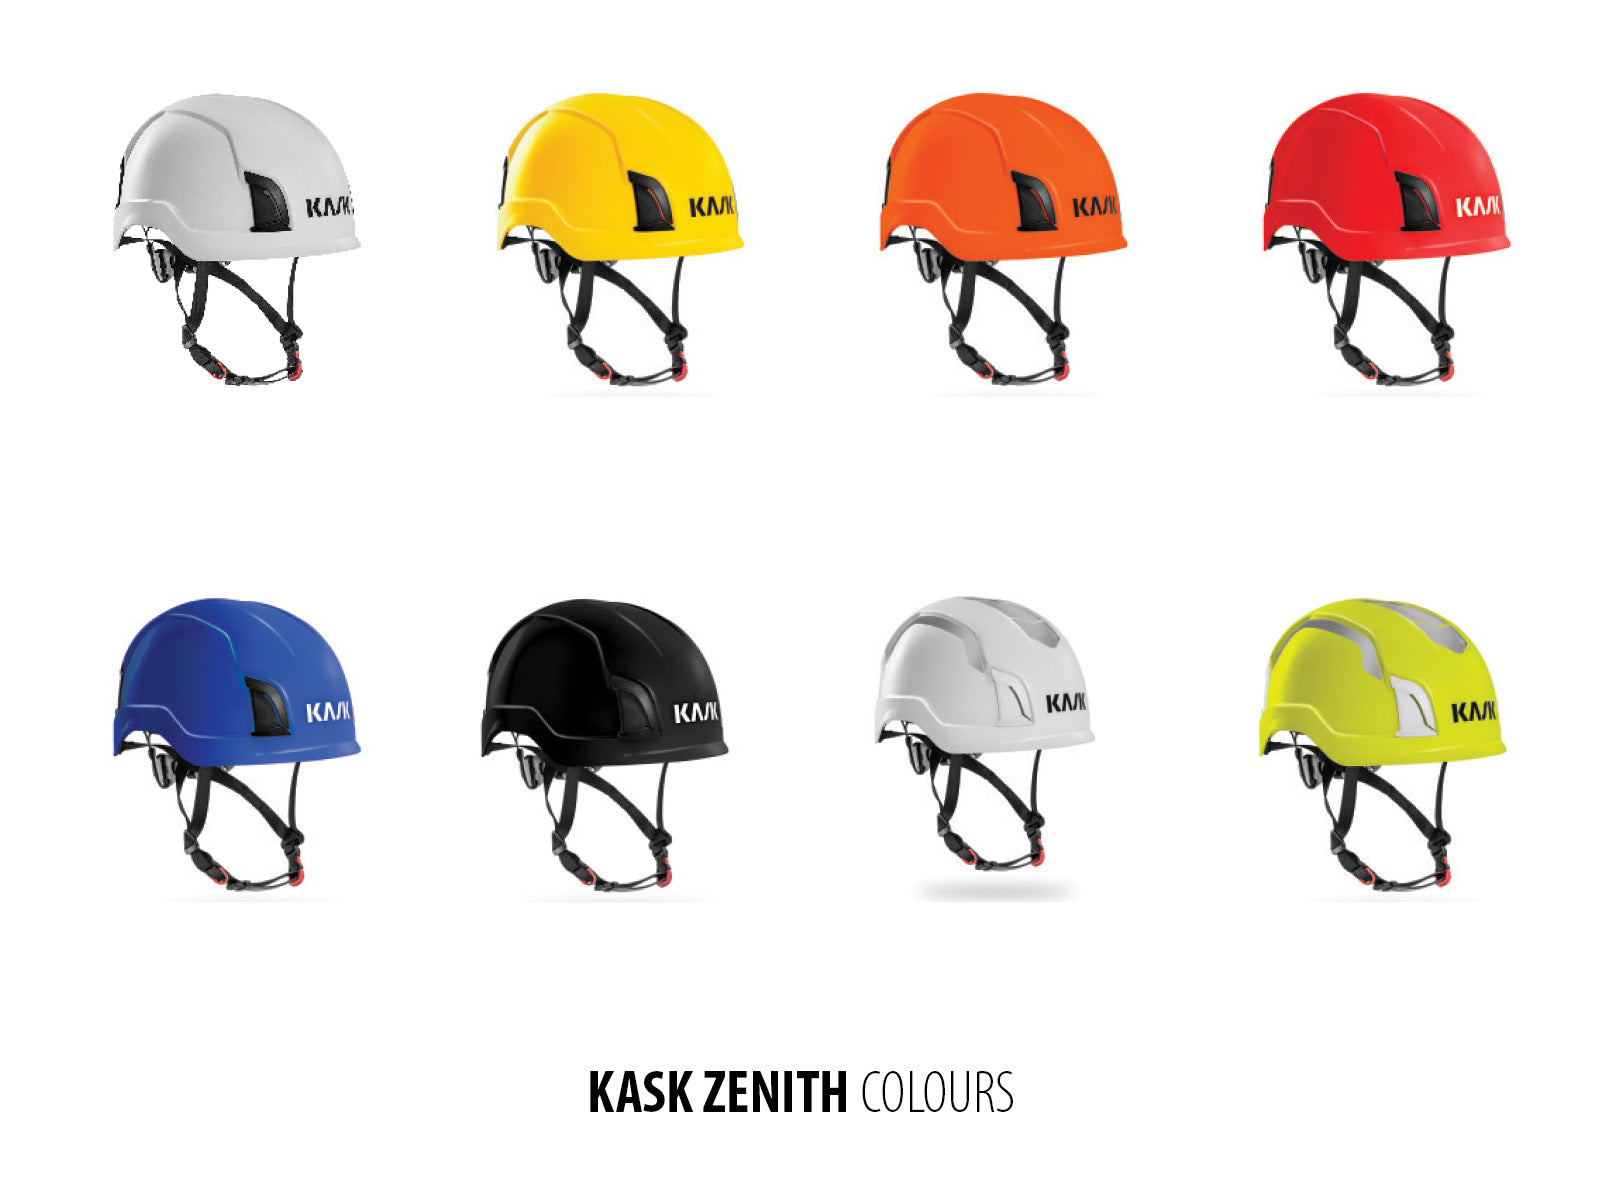 KASK Zenith Helmet